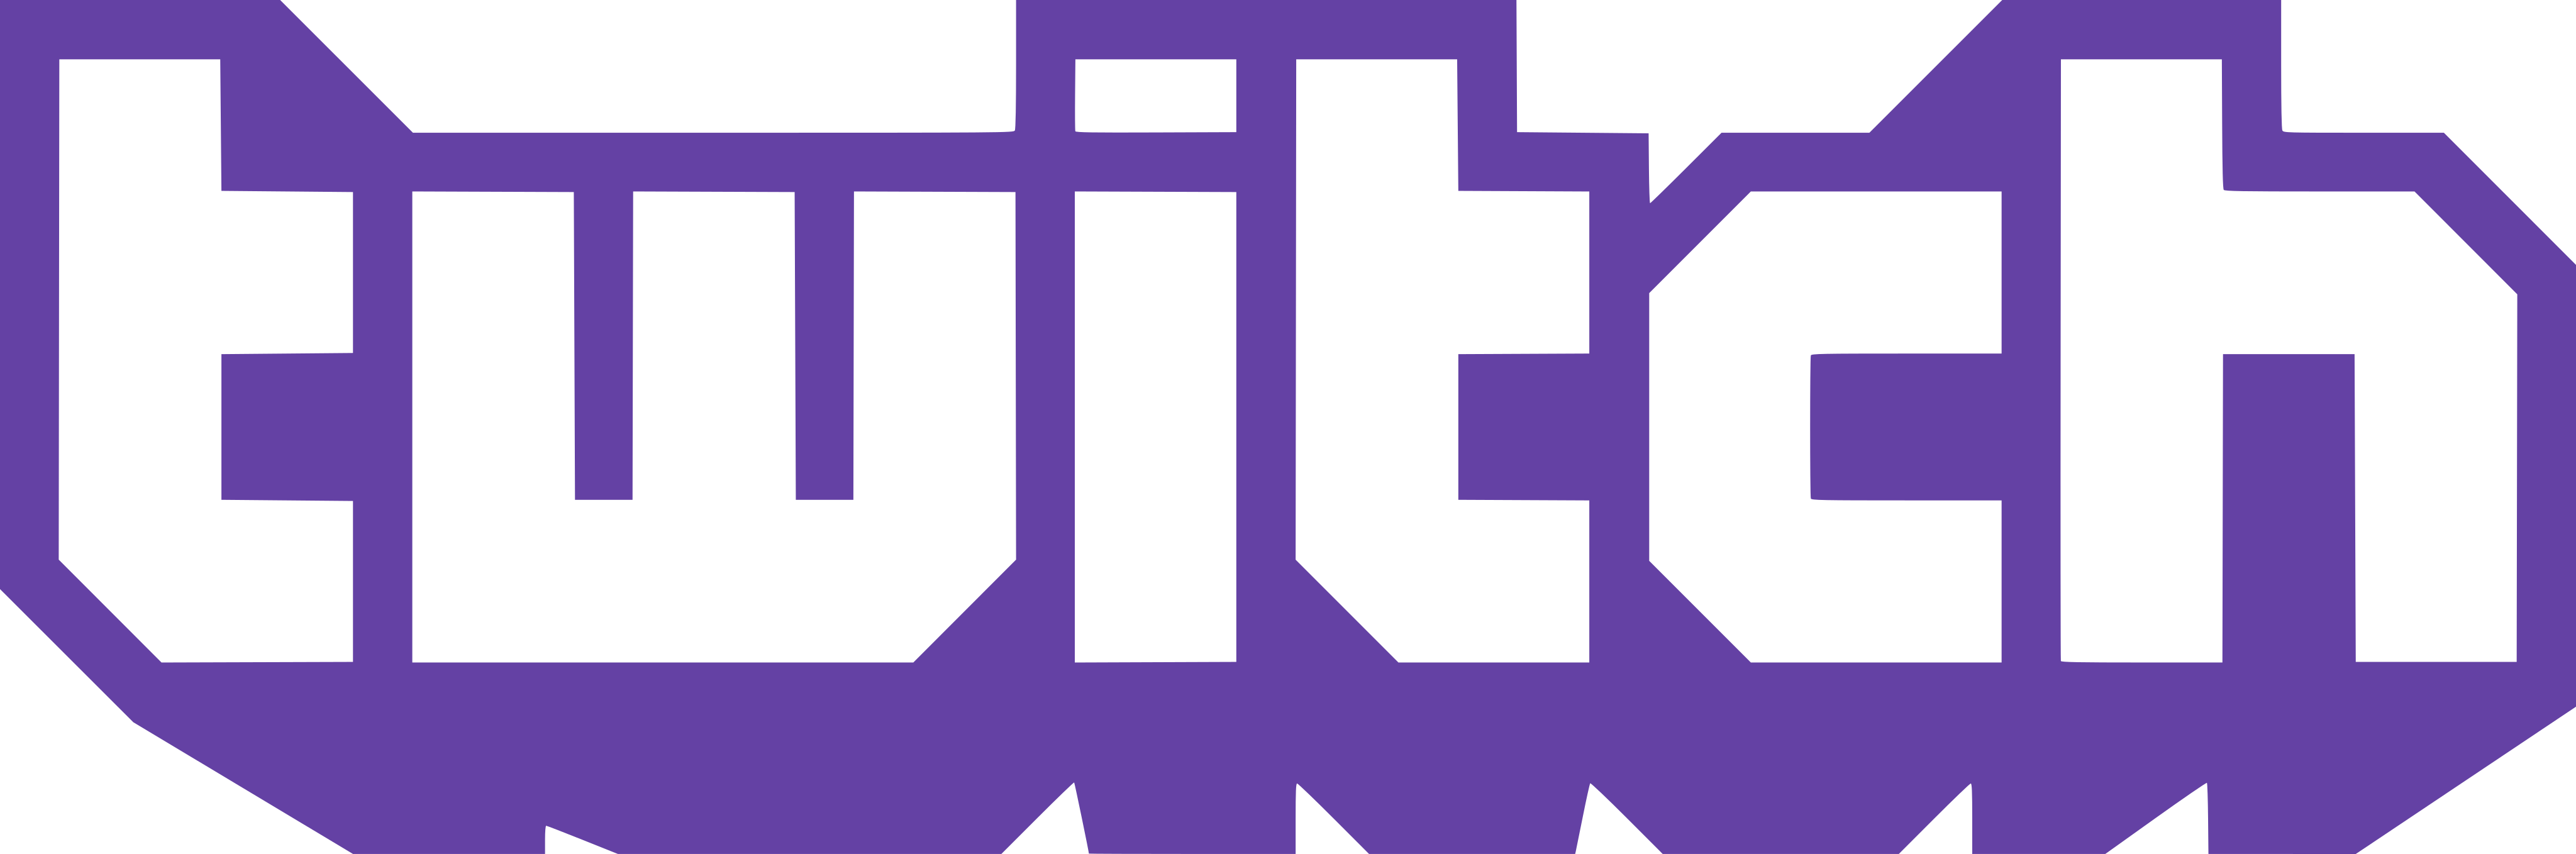 twitch logo - Twitch Logo